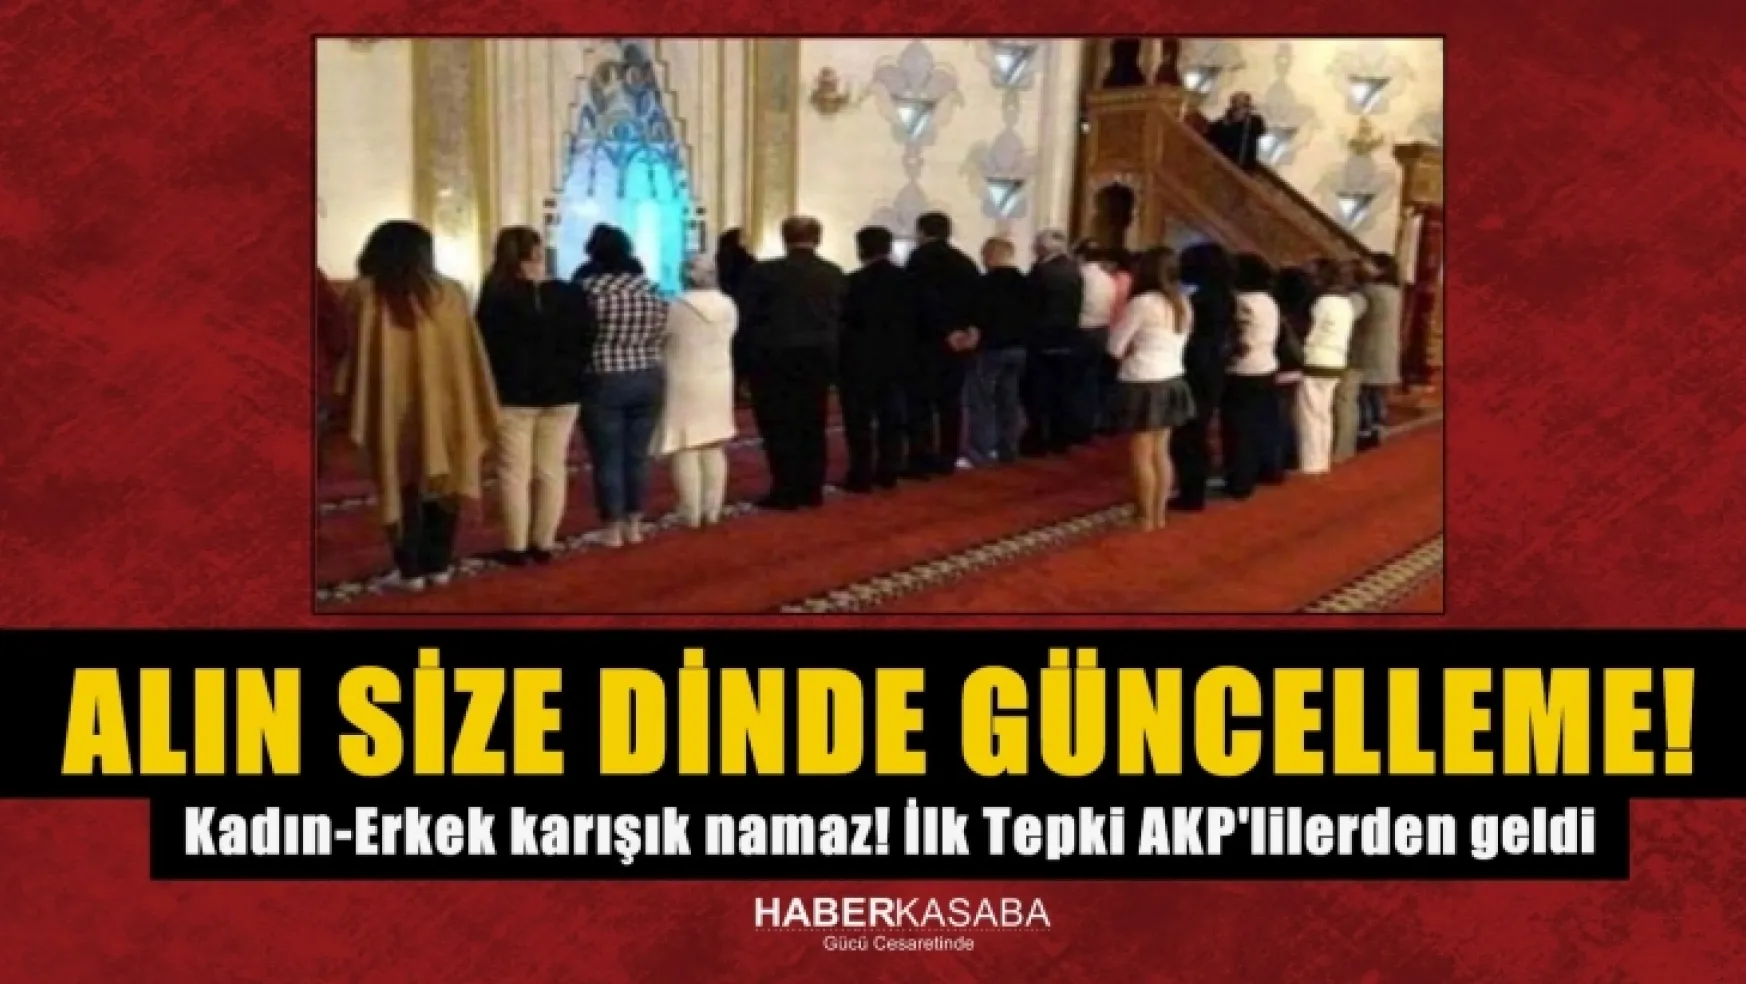 Alın size Erdoğan'ın dediği dinde güncelleme Kadın ve Erkek karışık namaz! İlk tepki AKP'lilerden geldi...